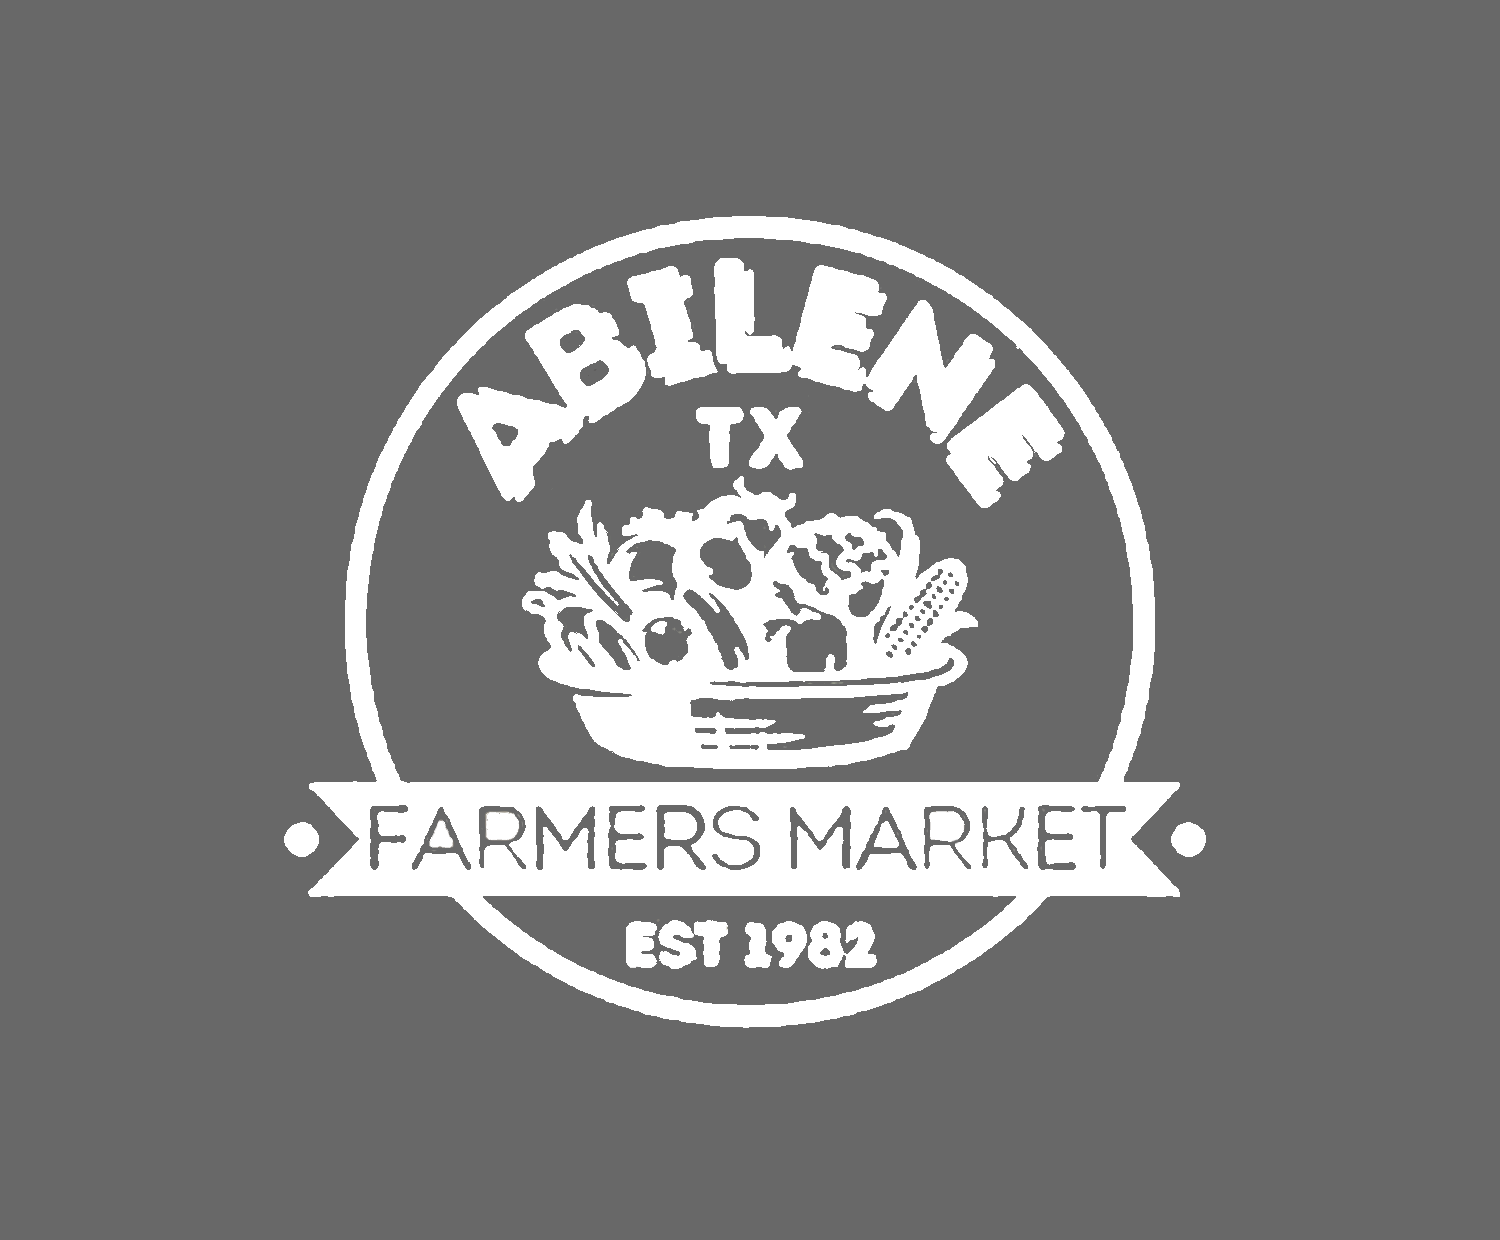 Abilene Farmers Market